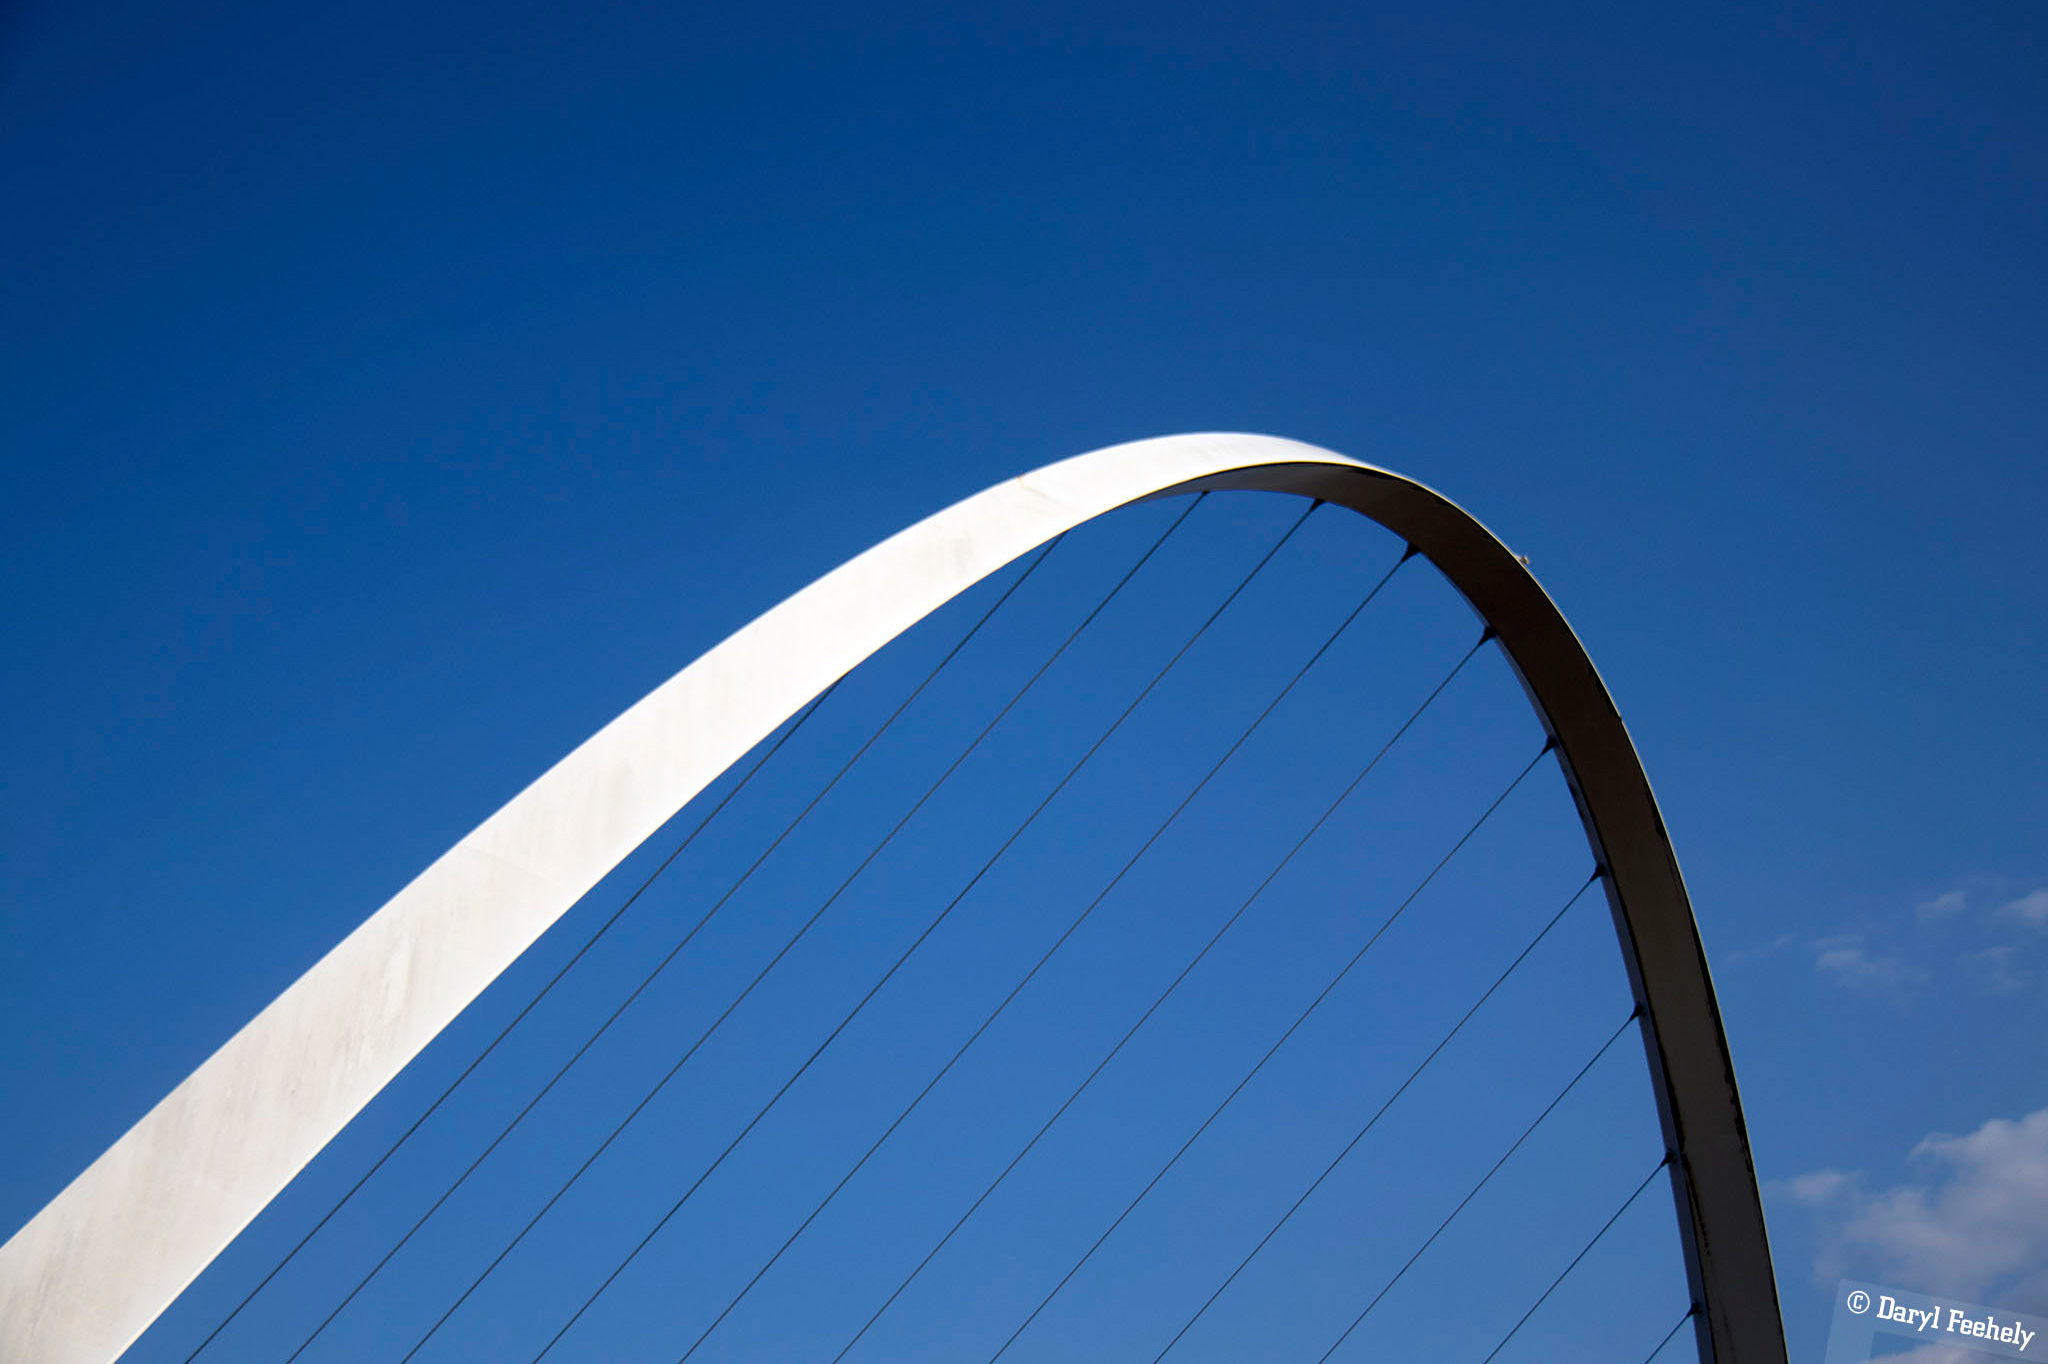 The Gateshead Millenium Bridge